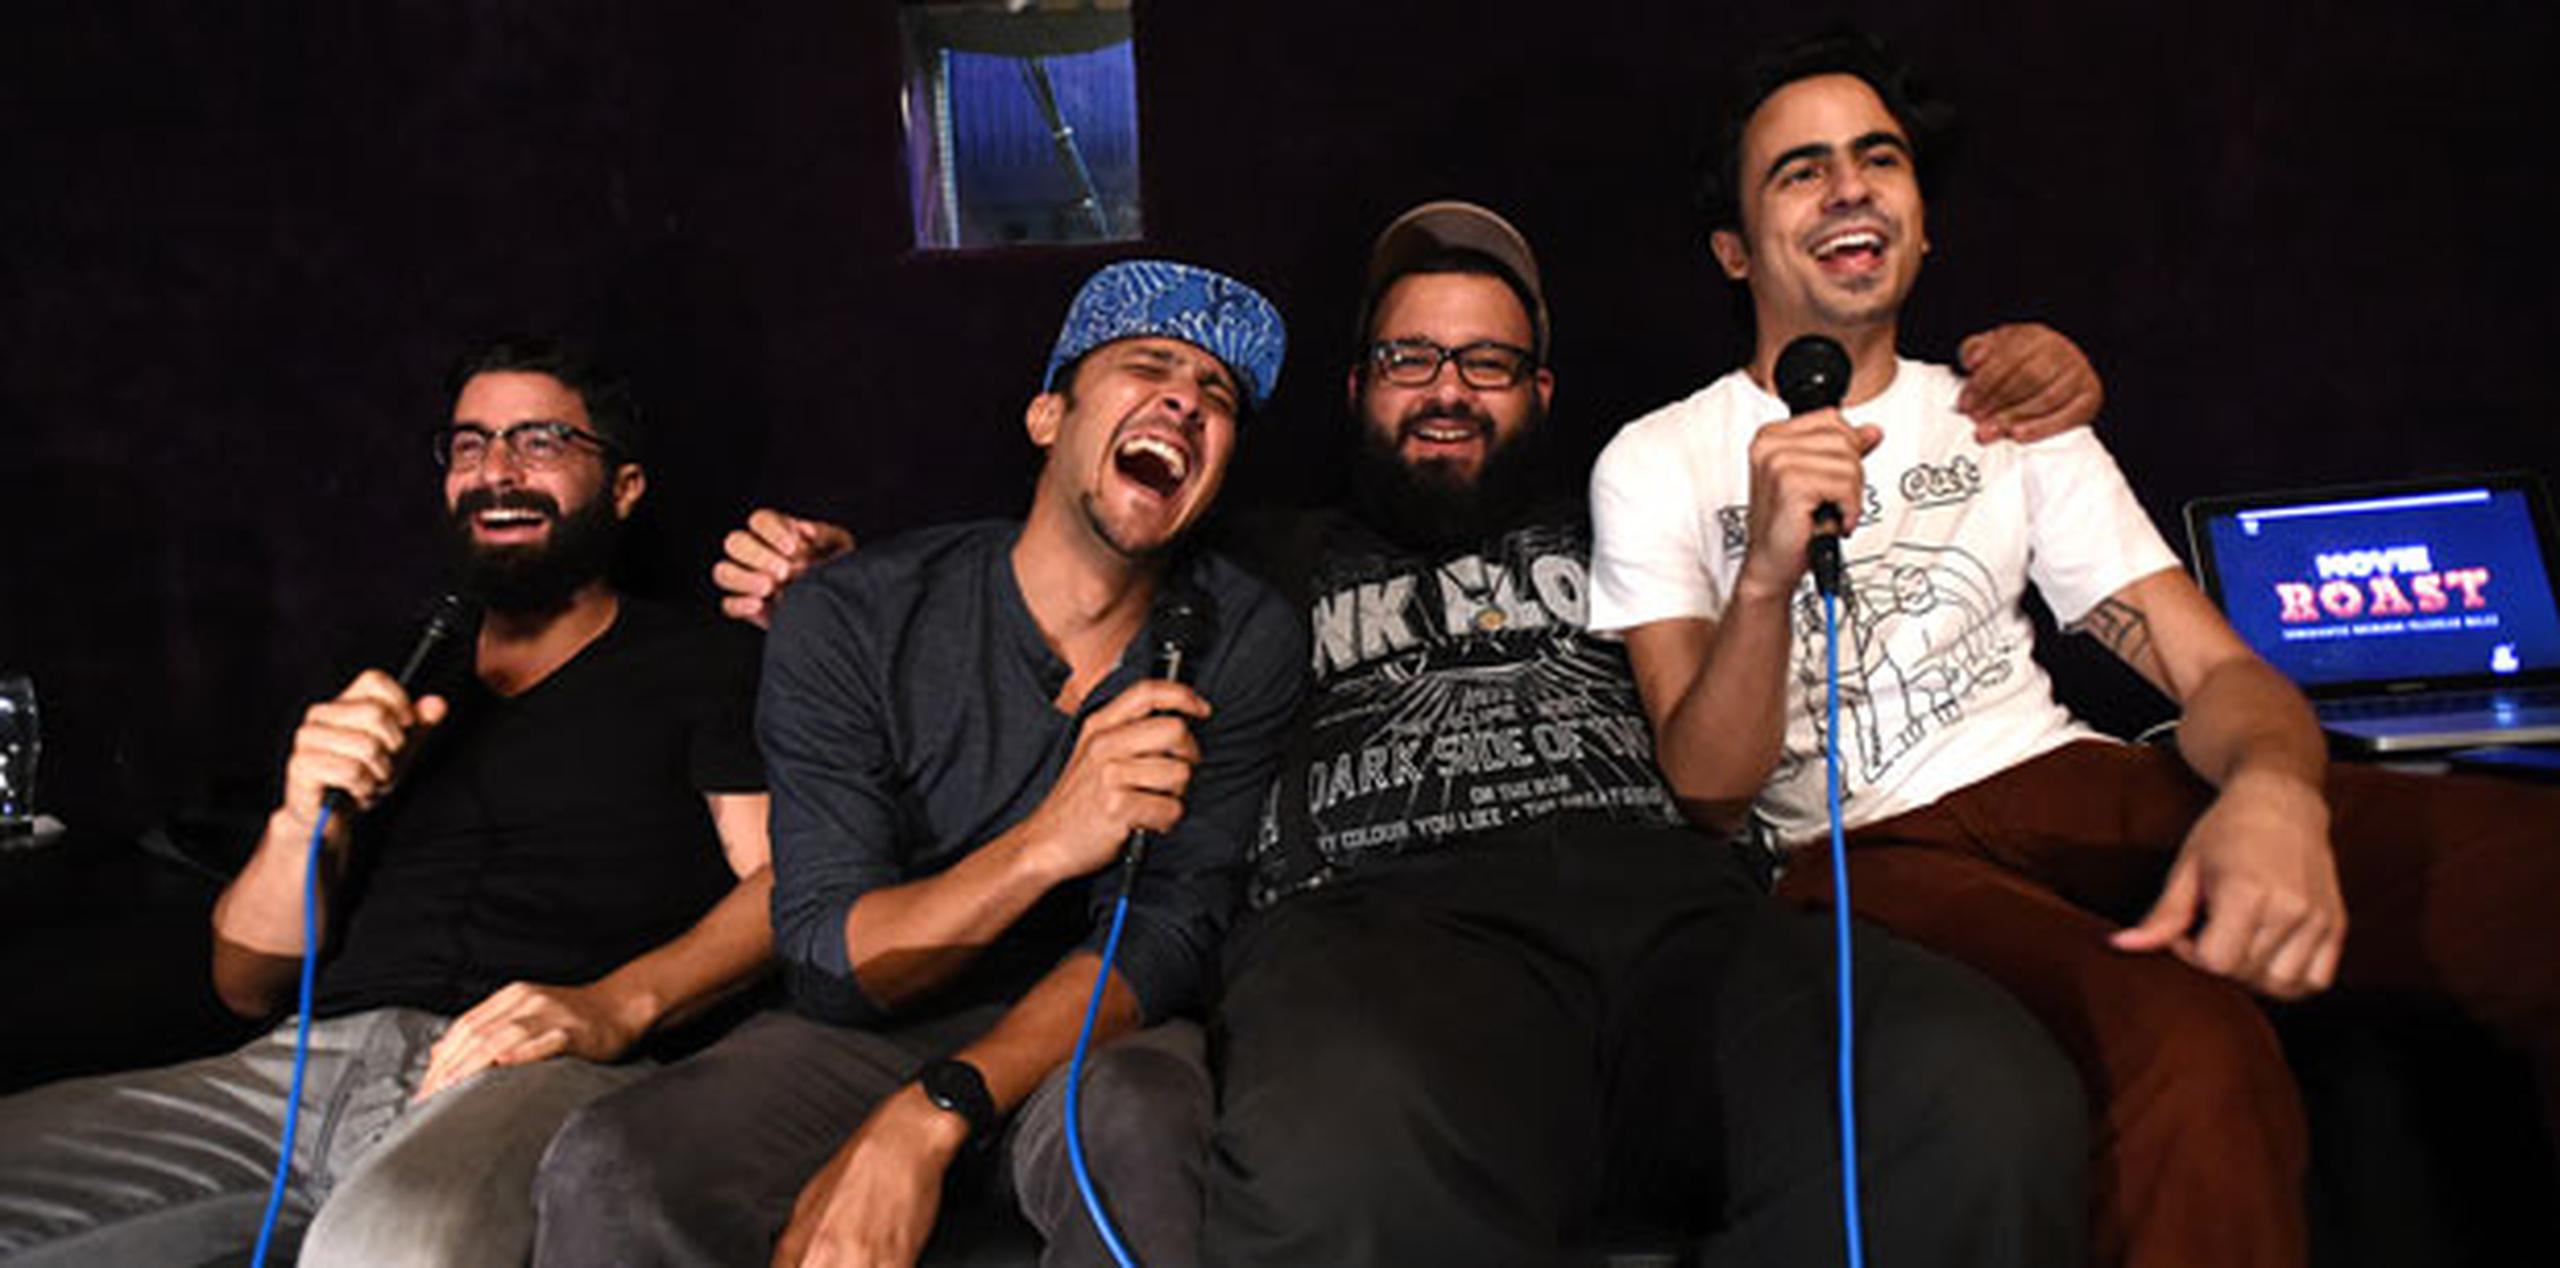 Roy Sánchez Vahamonde, Francis Rosas, Erik Rodríguez y Esteban Ruiz forman parte del grupo de comediantes que participa del evento. (andre.kang@gfrmedia.com)